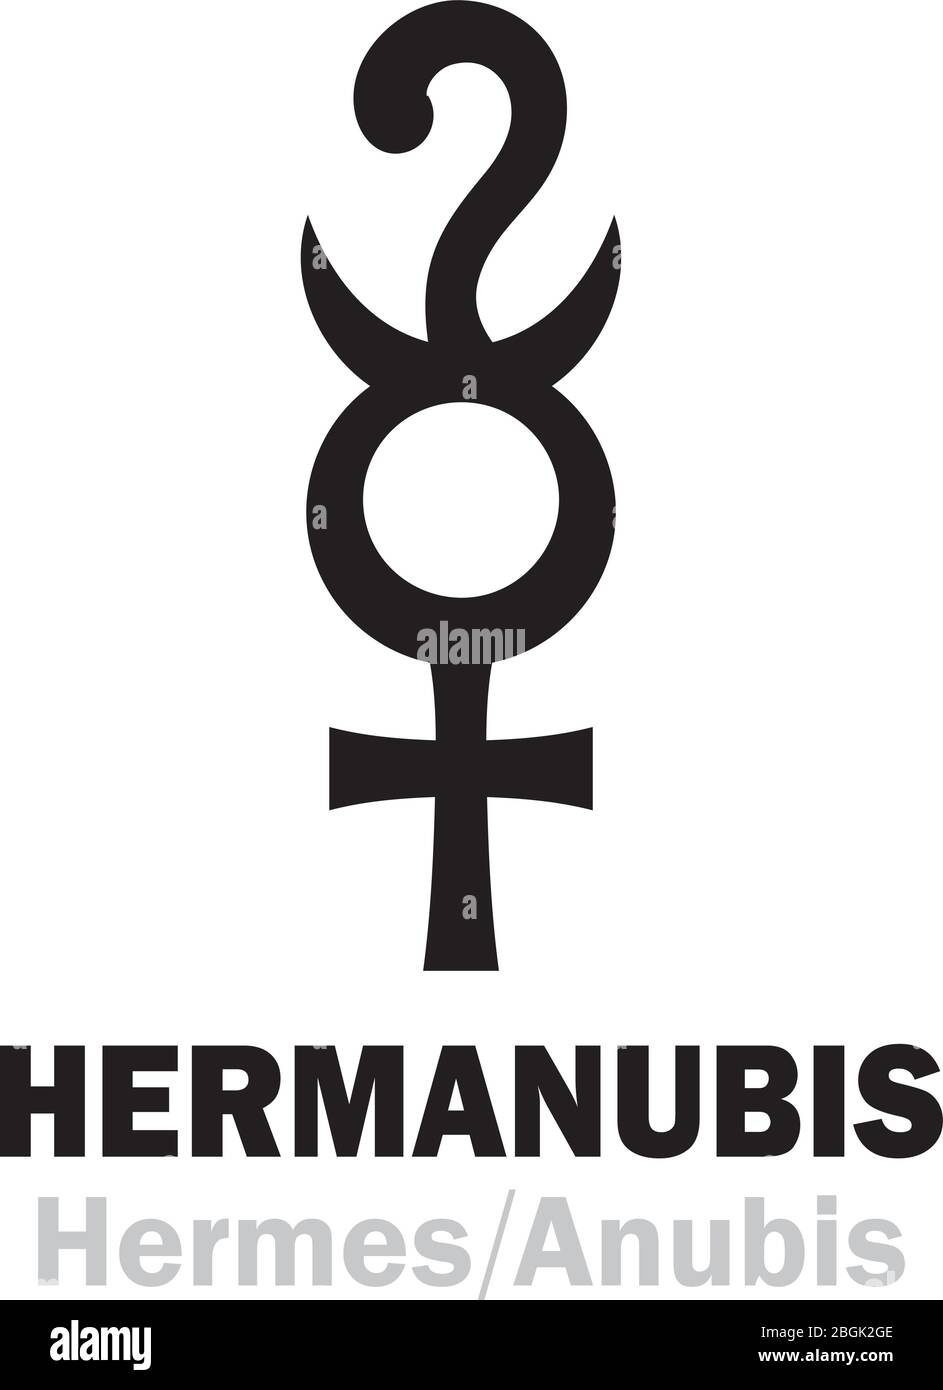 Astrologie-Alphabet: HERMANUBIS (Hermes+Anubis), die griechisch-ägyptische synkretische Gottheit der Wahrheit, der Leiter der Seelen in die Unterwelt. Hieroglyphen. Stock Vektor